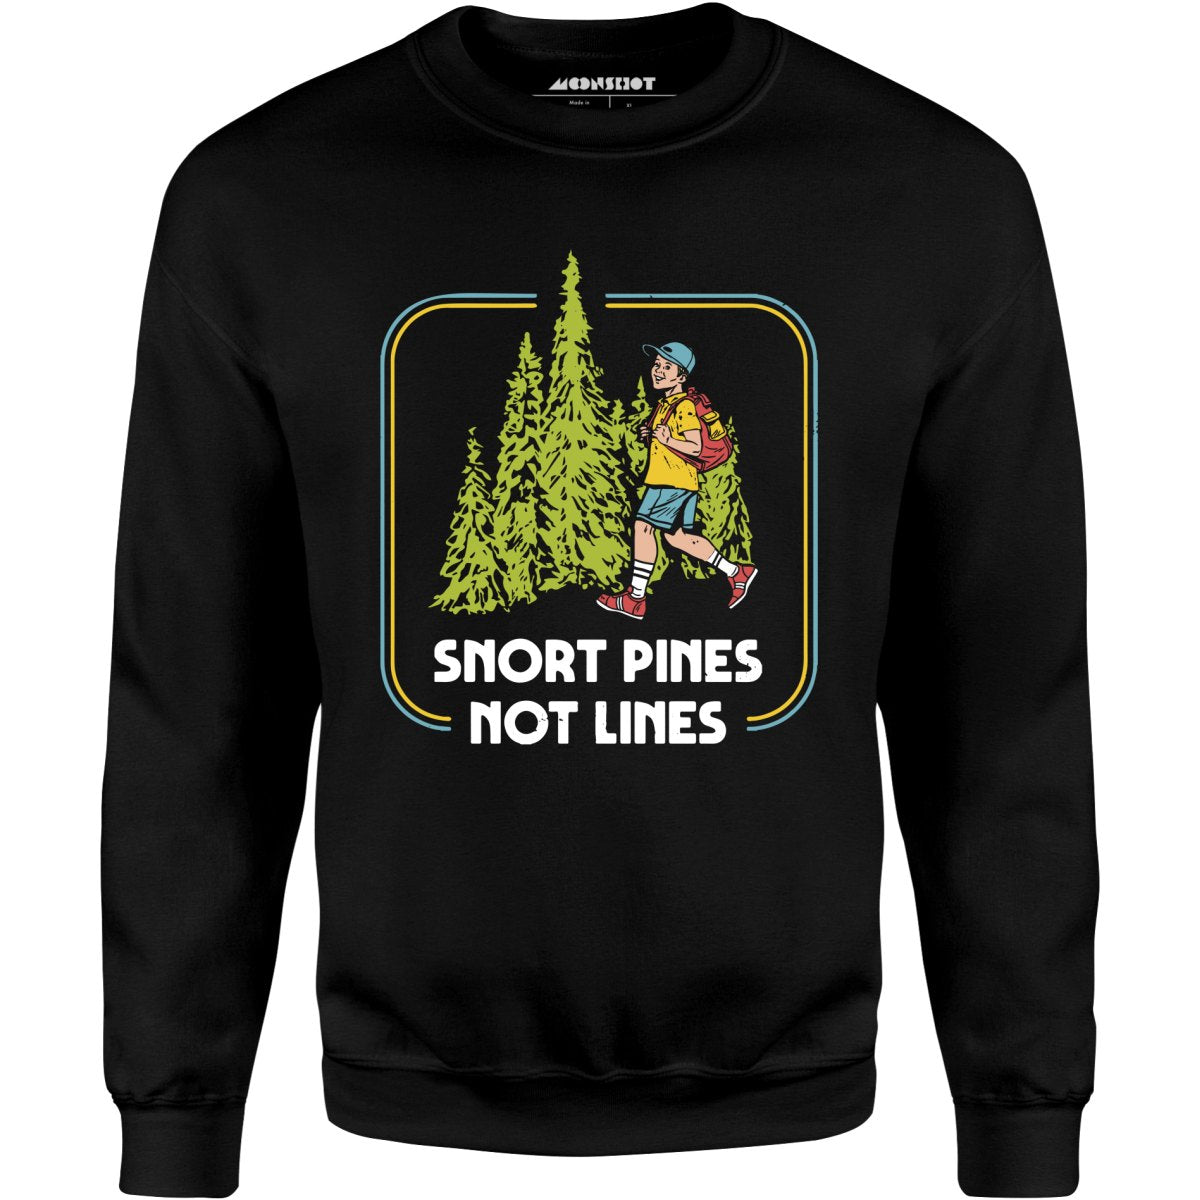 Snort Pines Not Lines - Unisex Sweatshirt